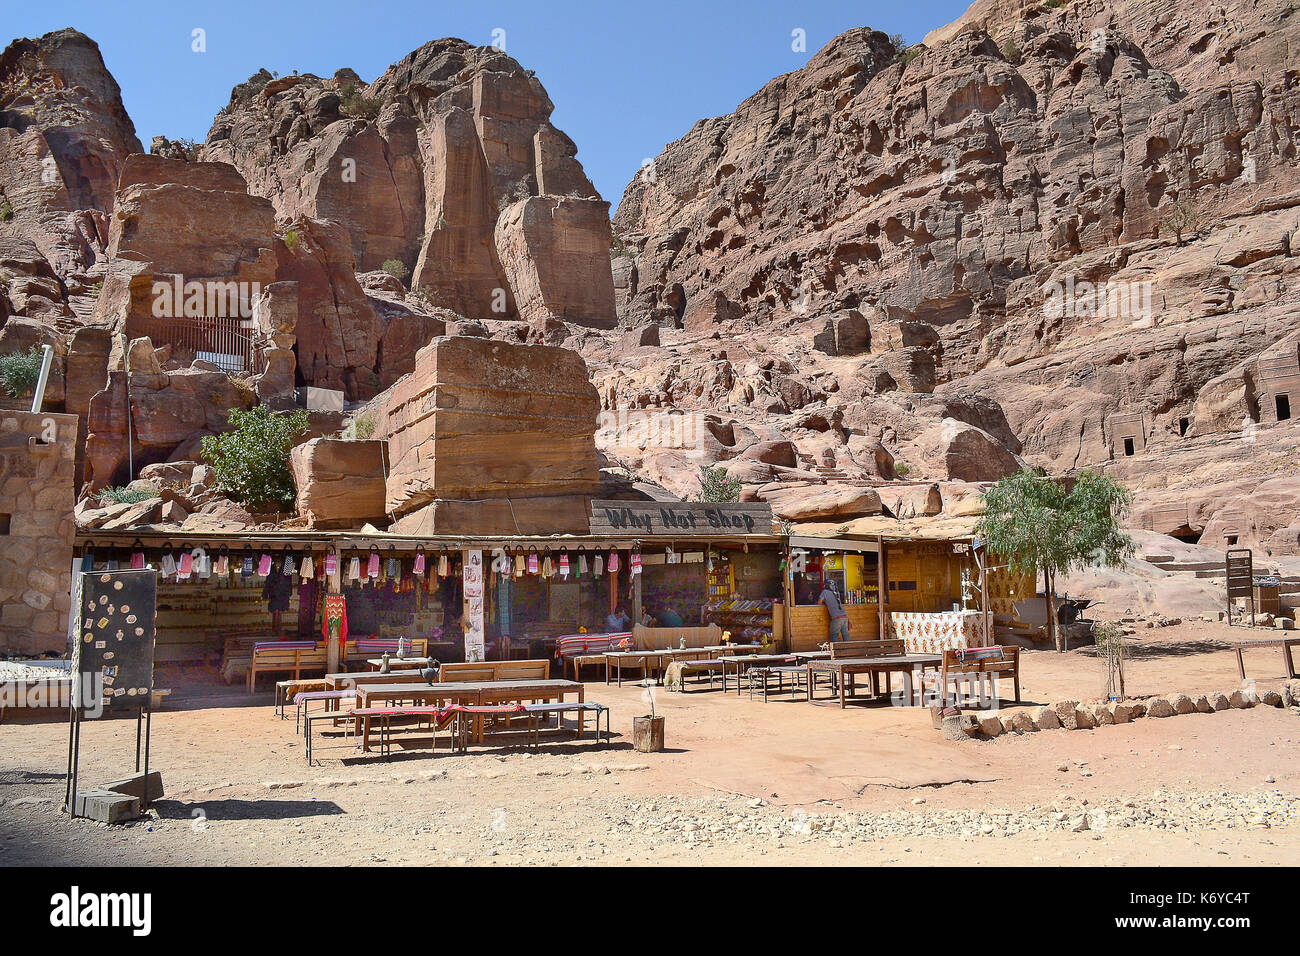 Petra, JORDANIE - Juillet 23, 2015 : stand de souvenirs à Petra, Jordanie. PETRA a été un site du patrimoine mondial de l'Unesco depuis 1985. Banque D'Images